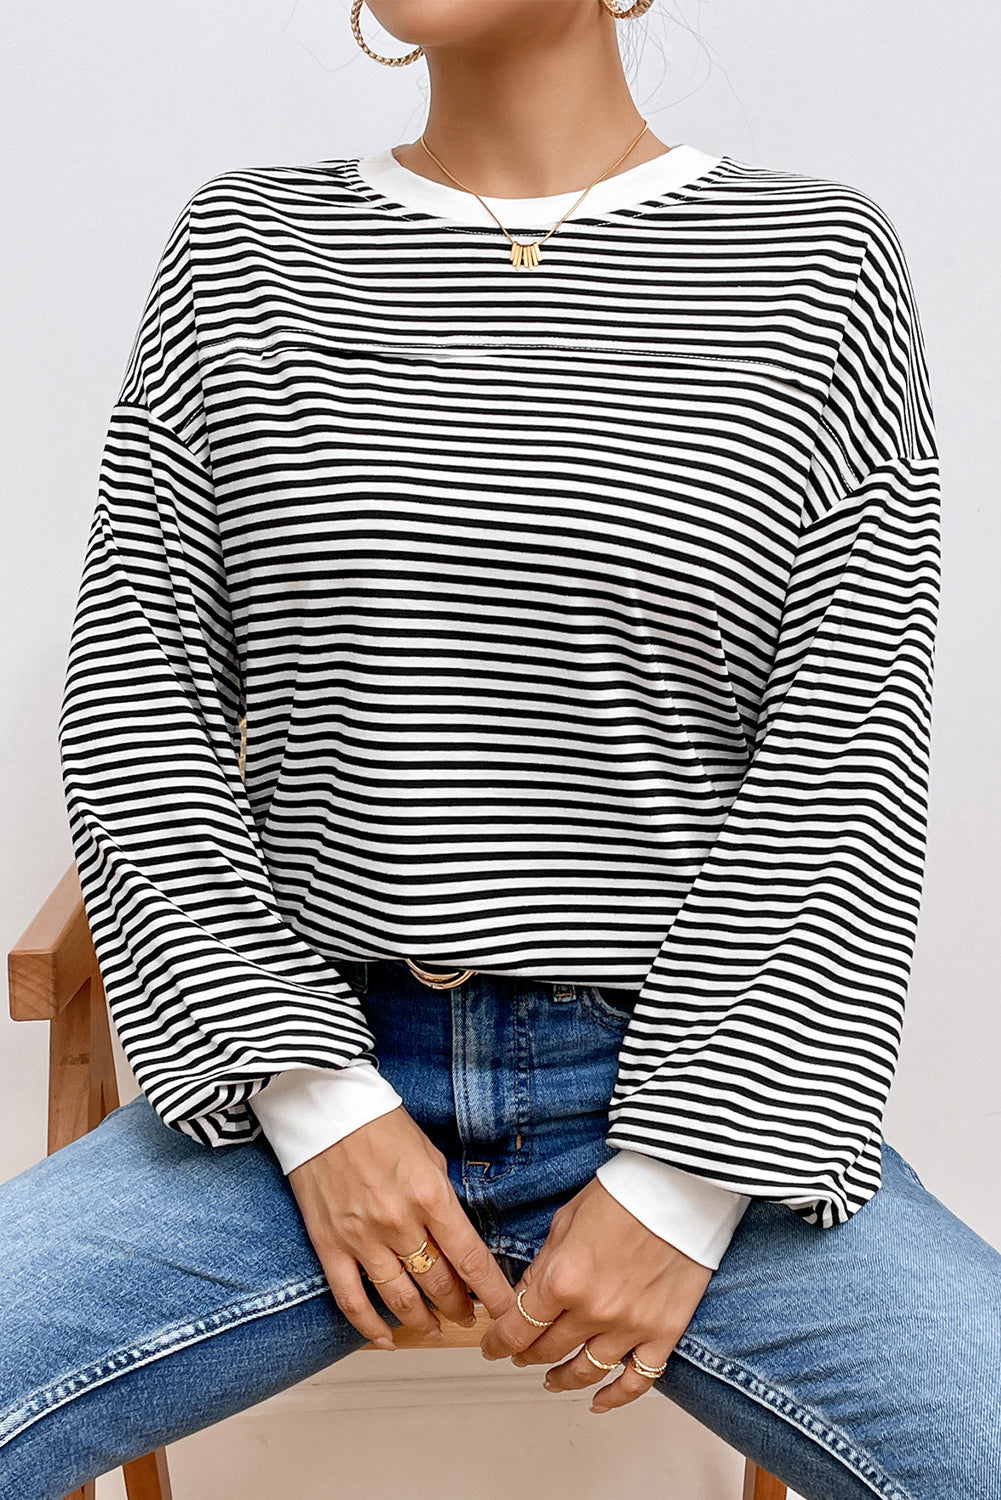 Ohlapen pulover s črtastim potiskom in spuščenimi rameni